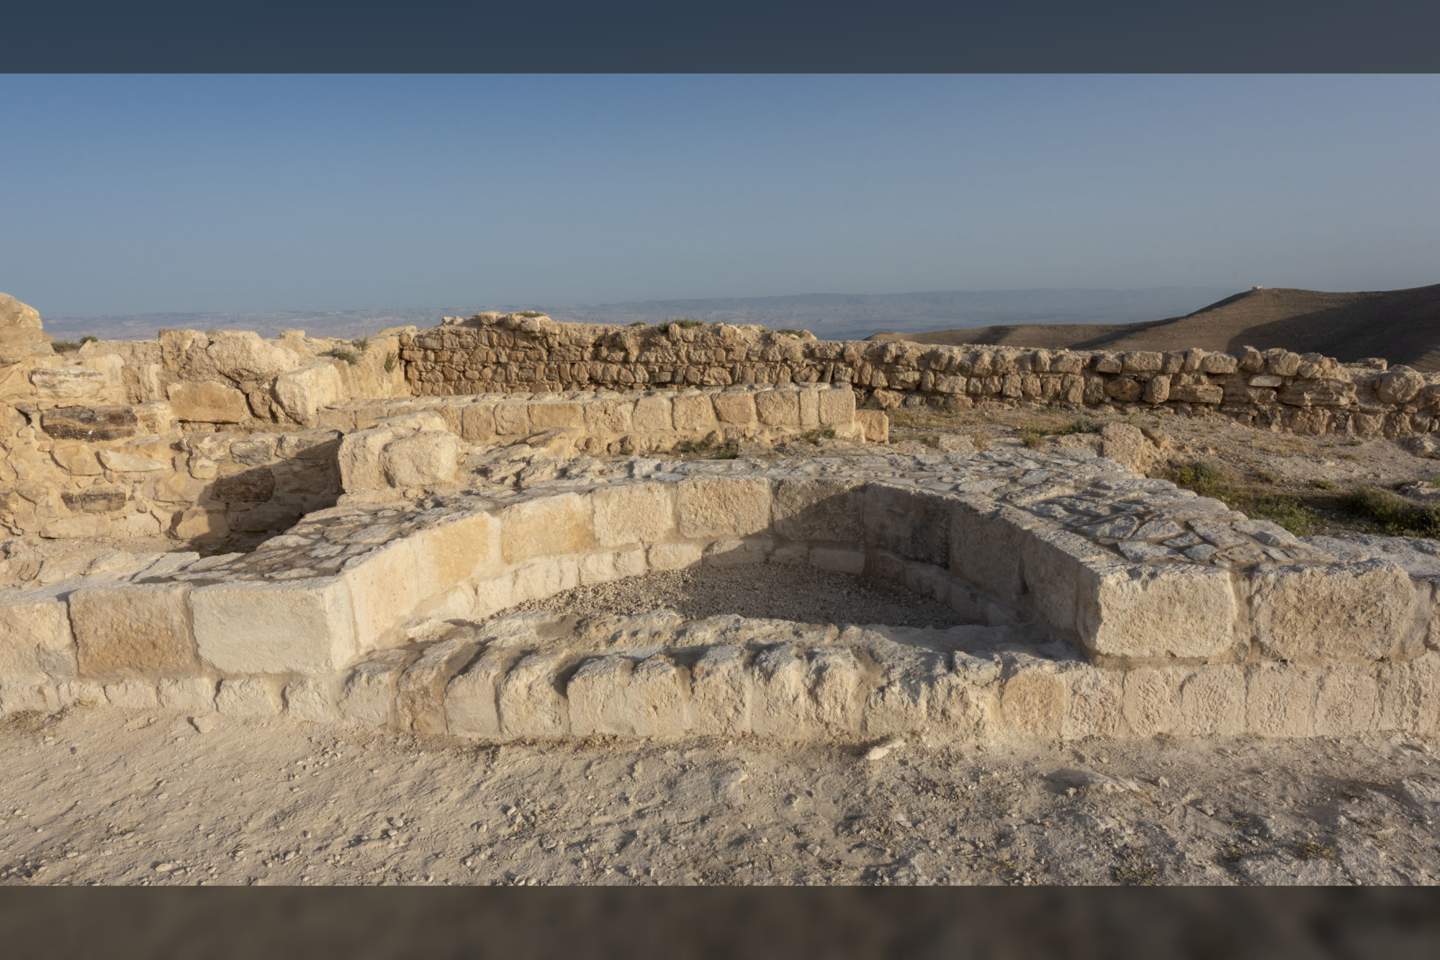  Archeologas mano, kad ši niša atspindi Erodo Antipo sosto liekanas. Iš čia gal4jo būti priimtas sprendimas įvykdyti mirties bausmę Jonui Krikštytojui.<br> G. Vöröso nuotr.